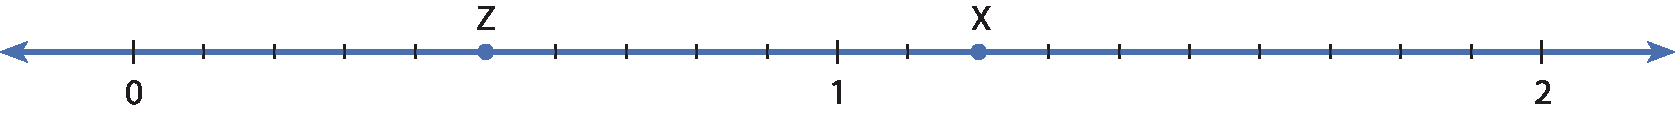 Ilustração. Reta numérica com do 0 até o 1 divididos em dez partes e a letra Z na quinta marca, e do 1 até o 2 também divididos em dez partes e a letra X na 2ª marca após o 1.